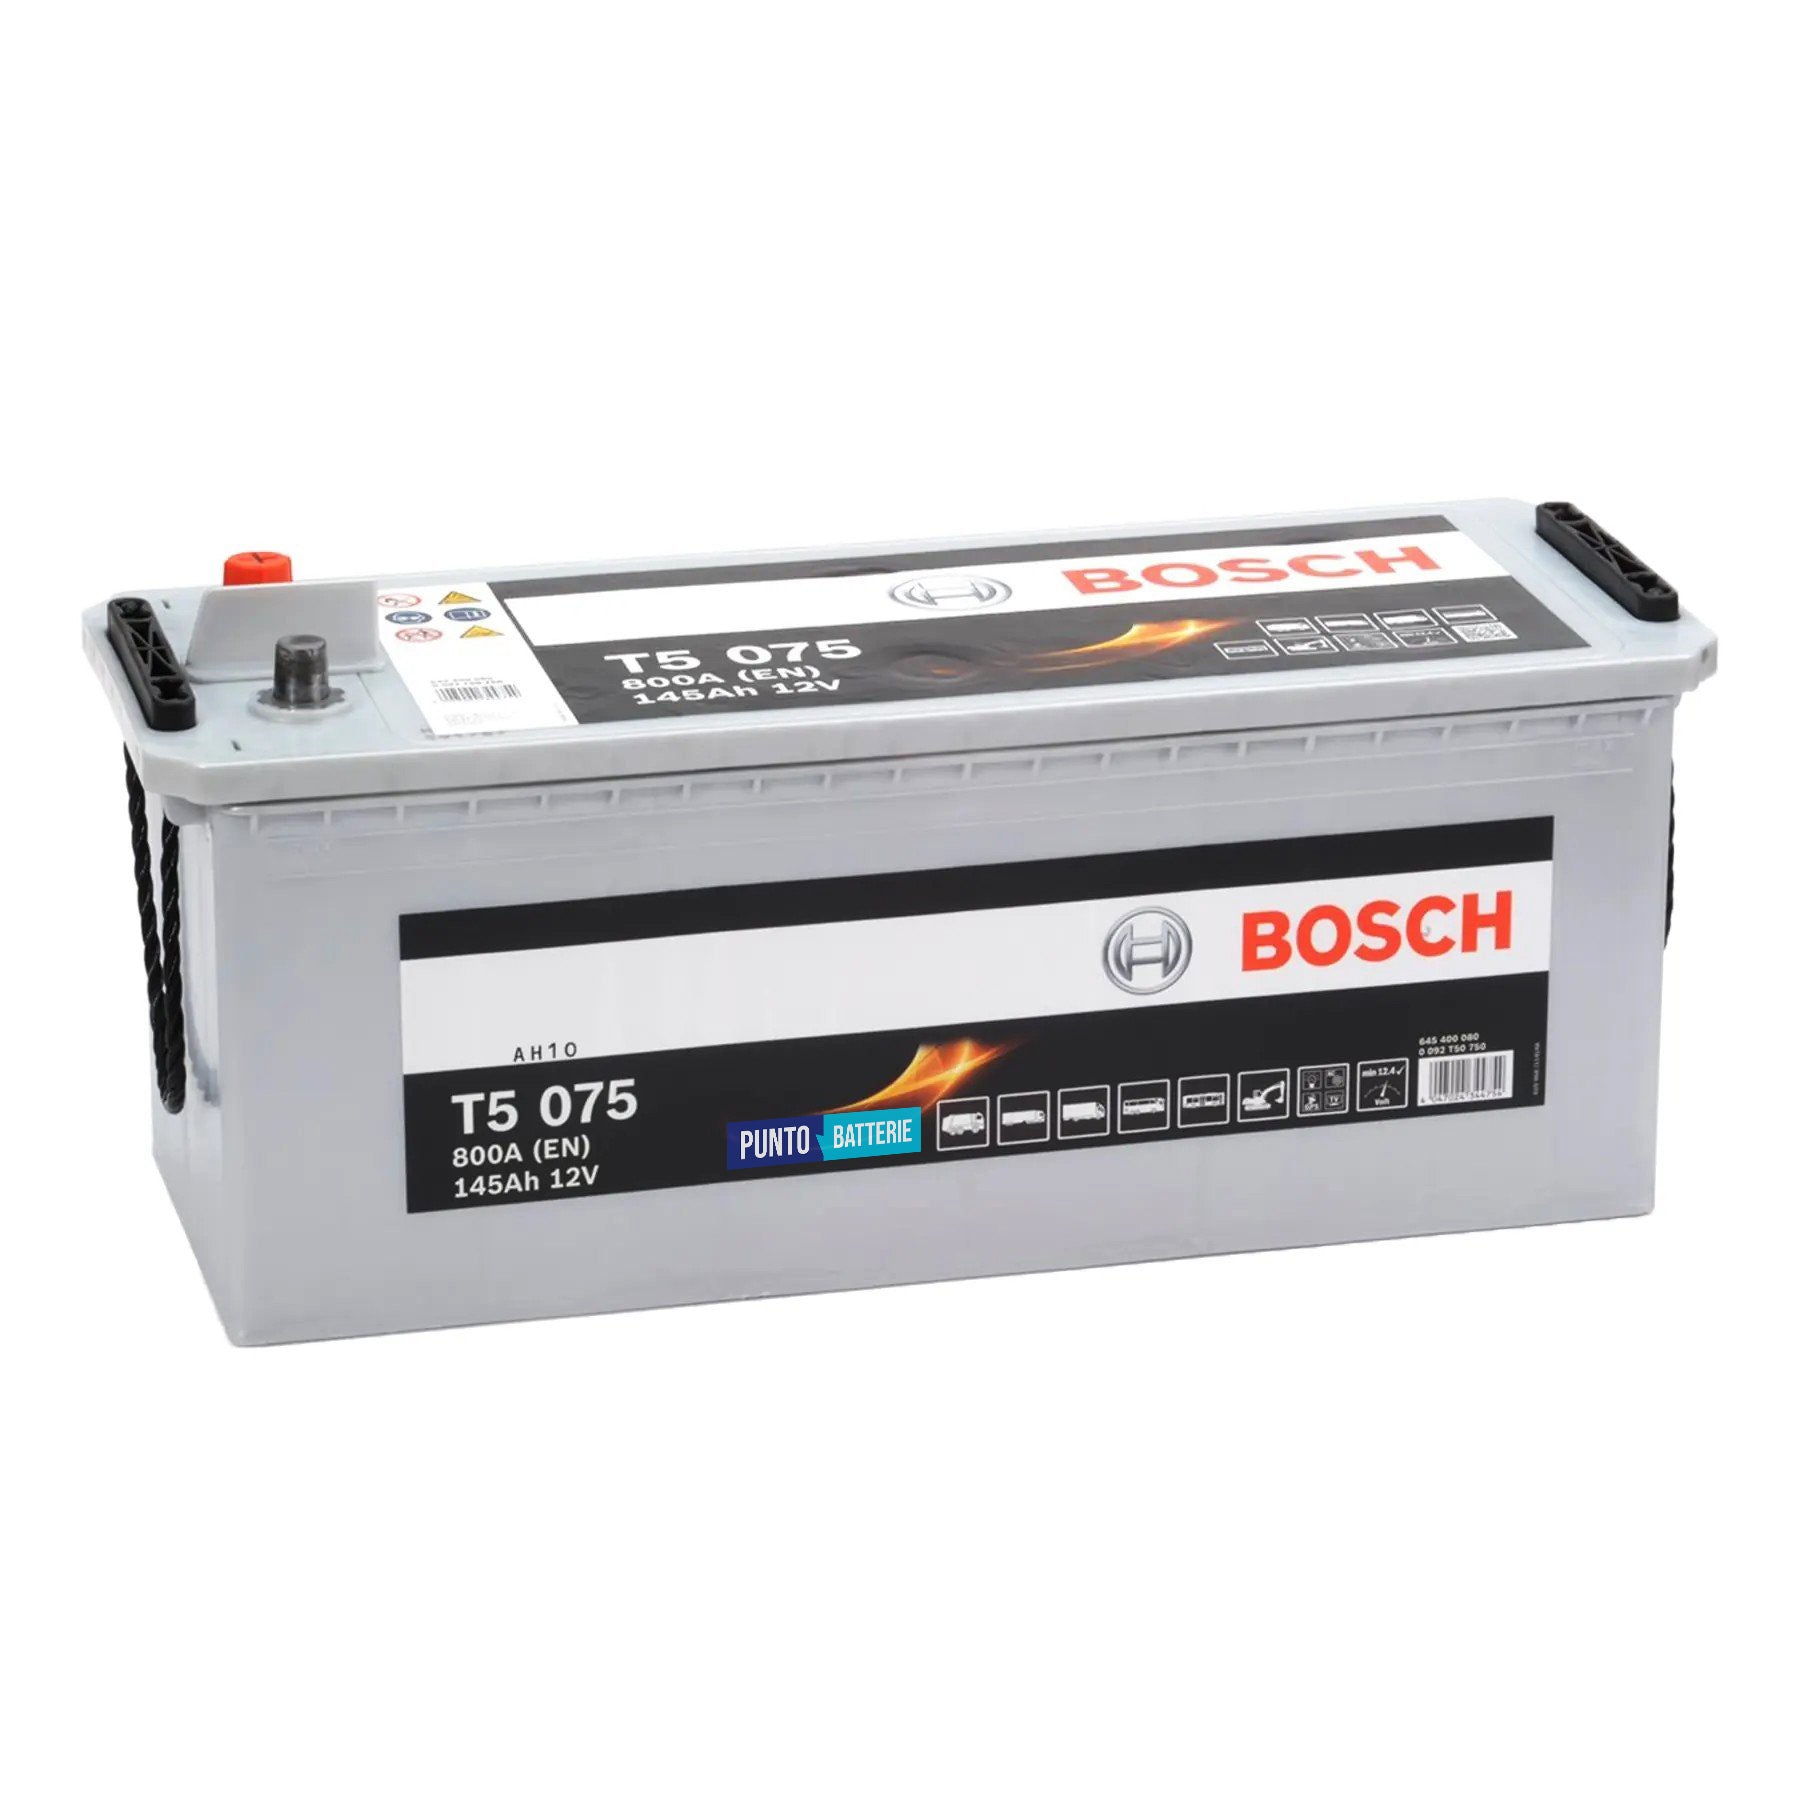 Batteria originale Bosch T5 T5075, dimensioni 513 x 189 x 223, polo positivo a sinistra, 12 volt, 145 amperora, 800 ampere. Batteria per camion e veicoli pesanti.